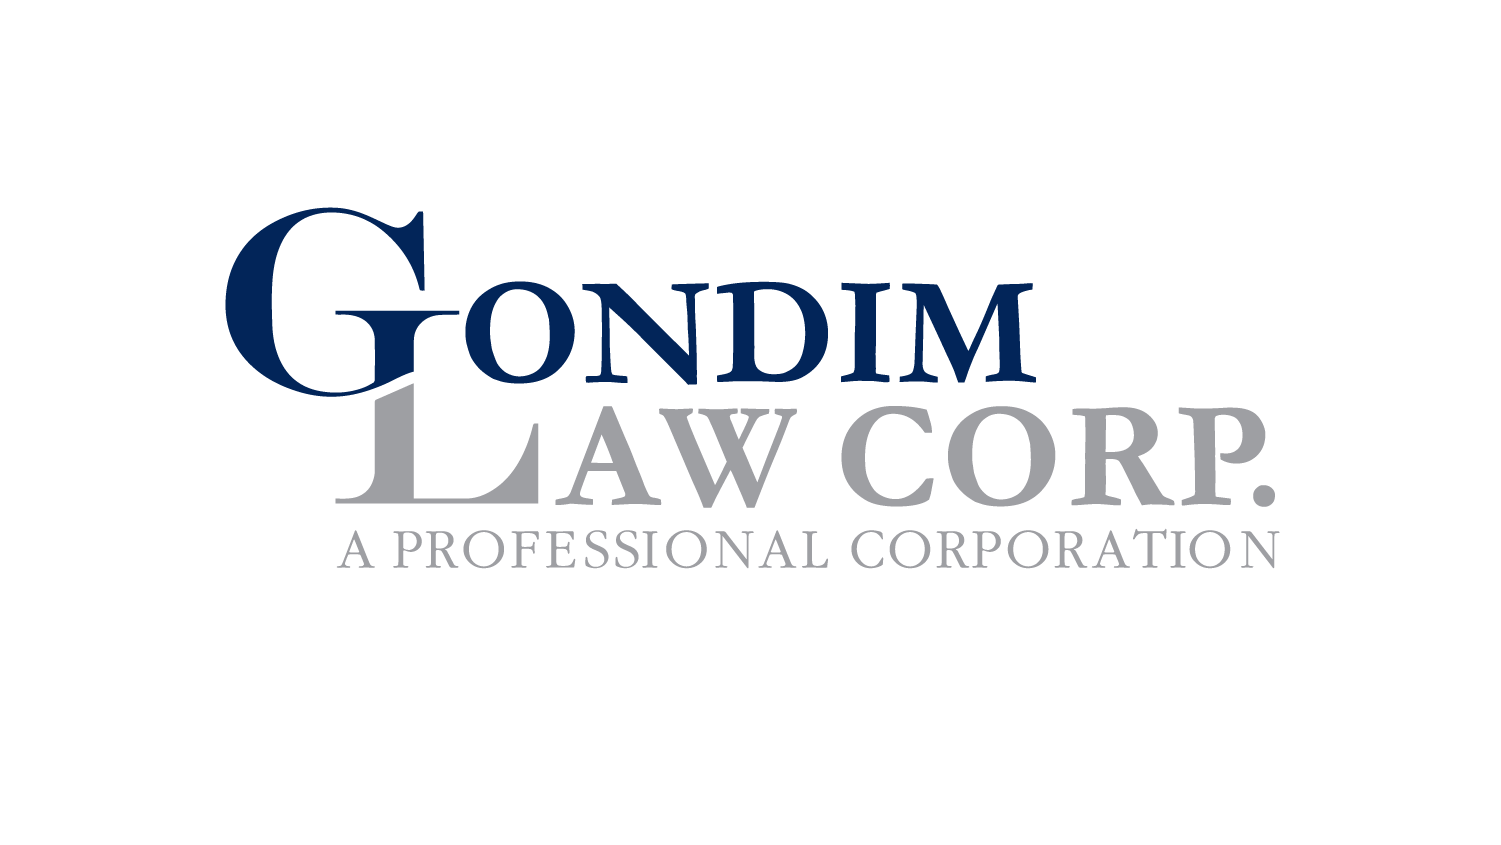 Gondim Law